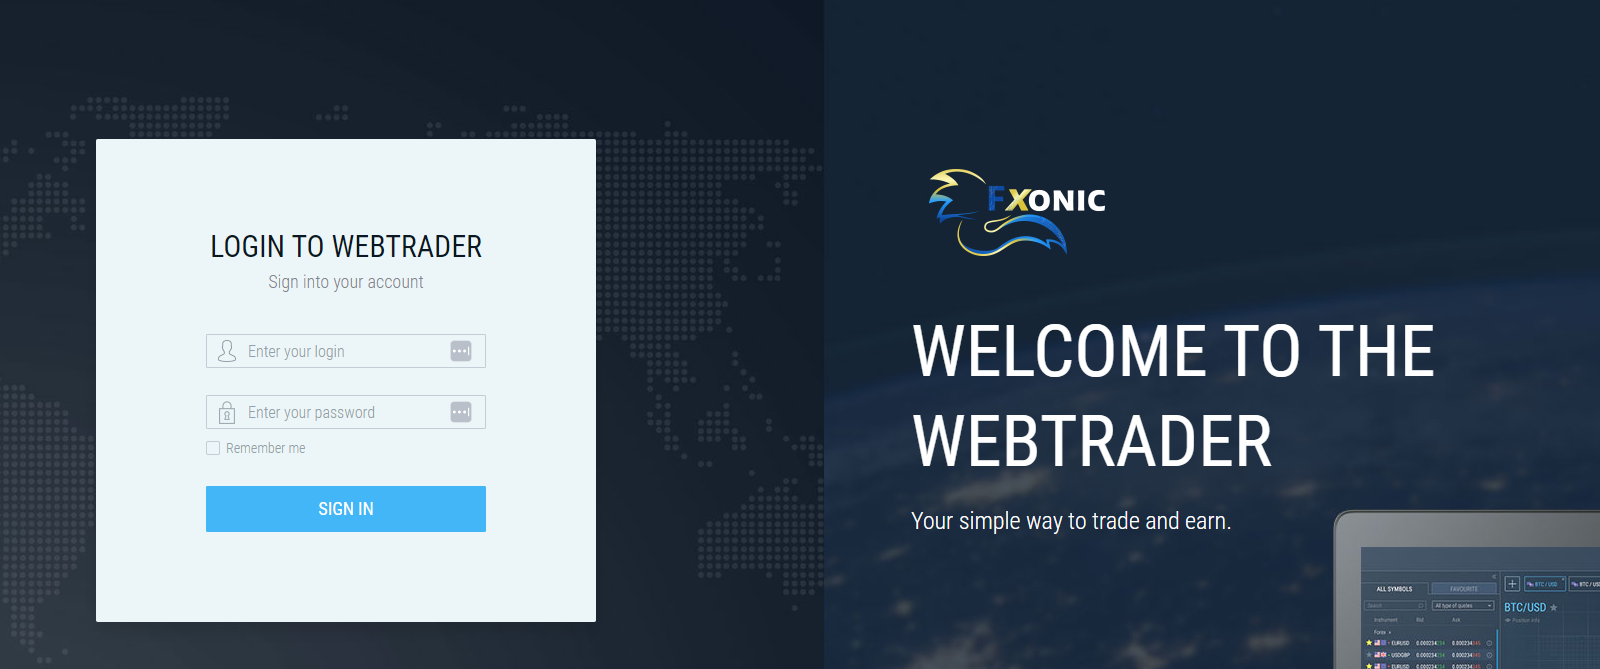 Fxonic WebTrader